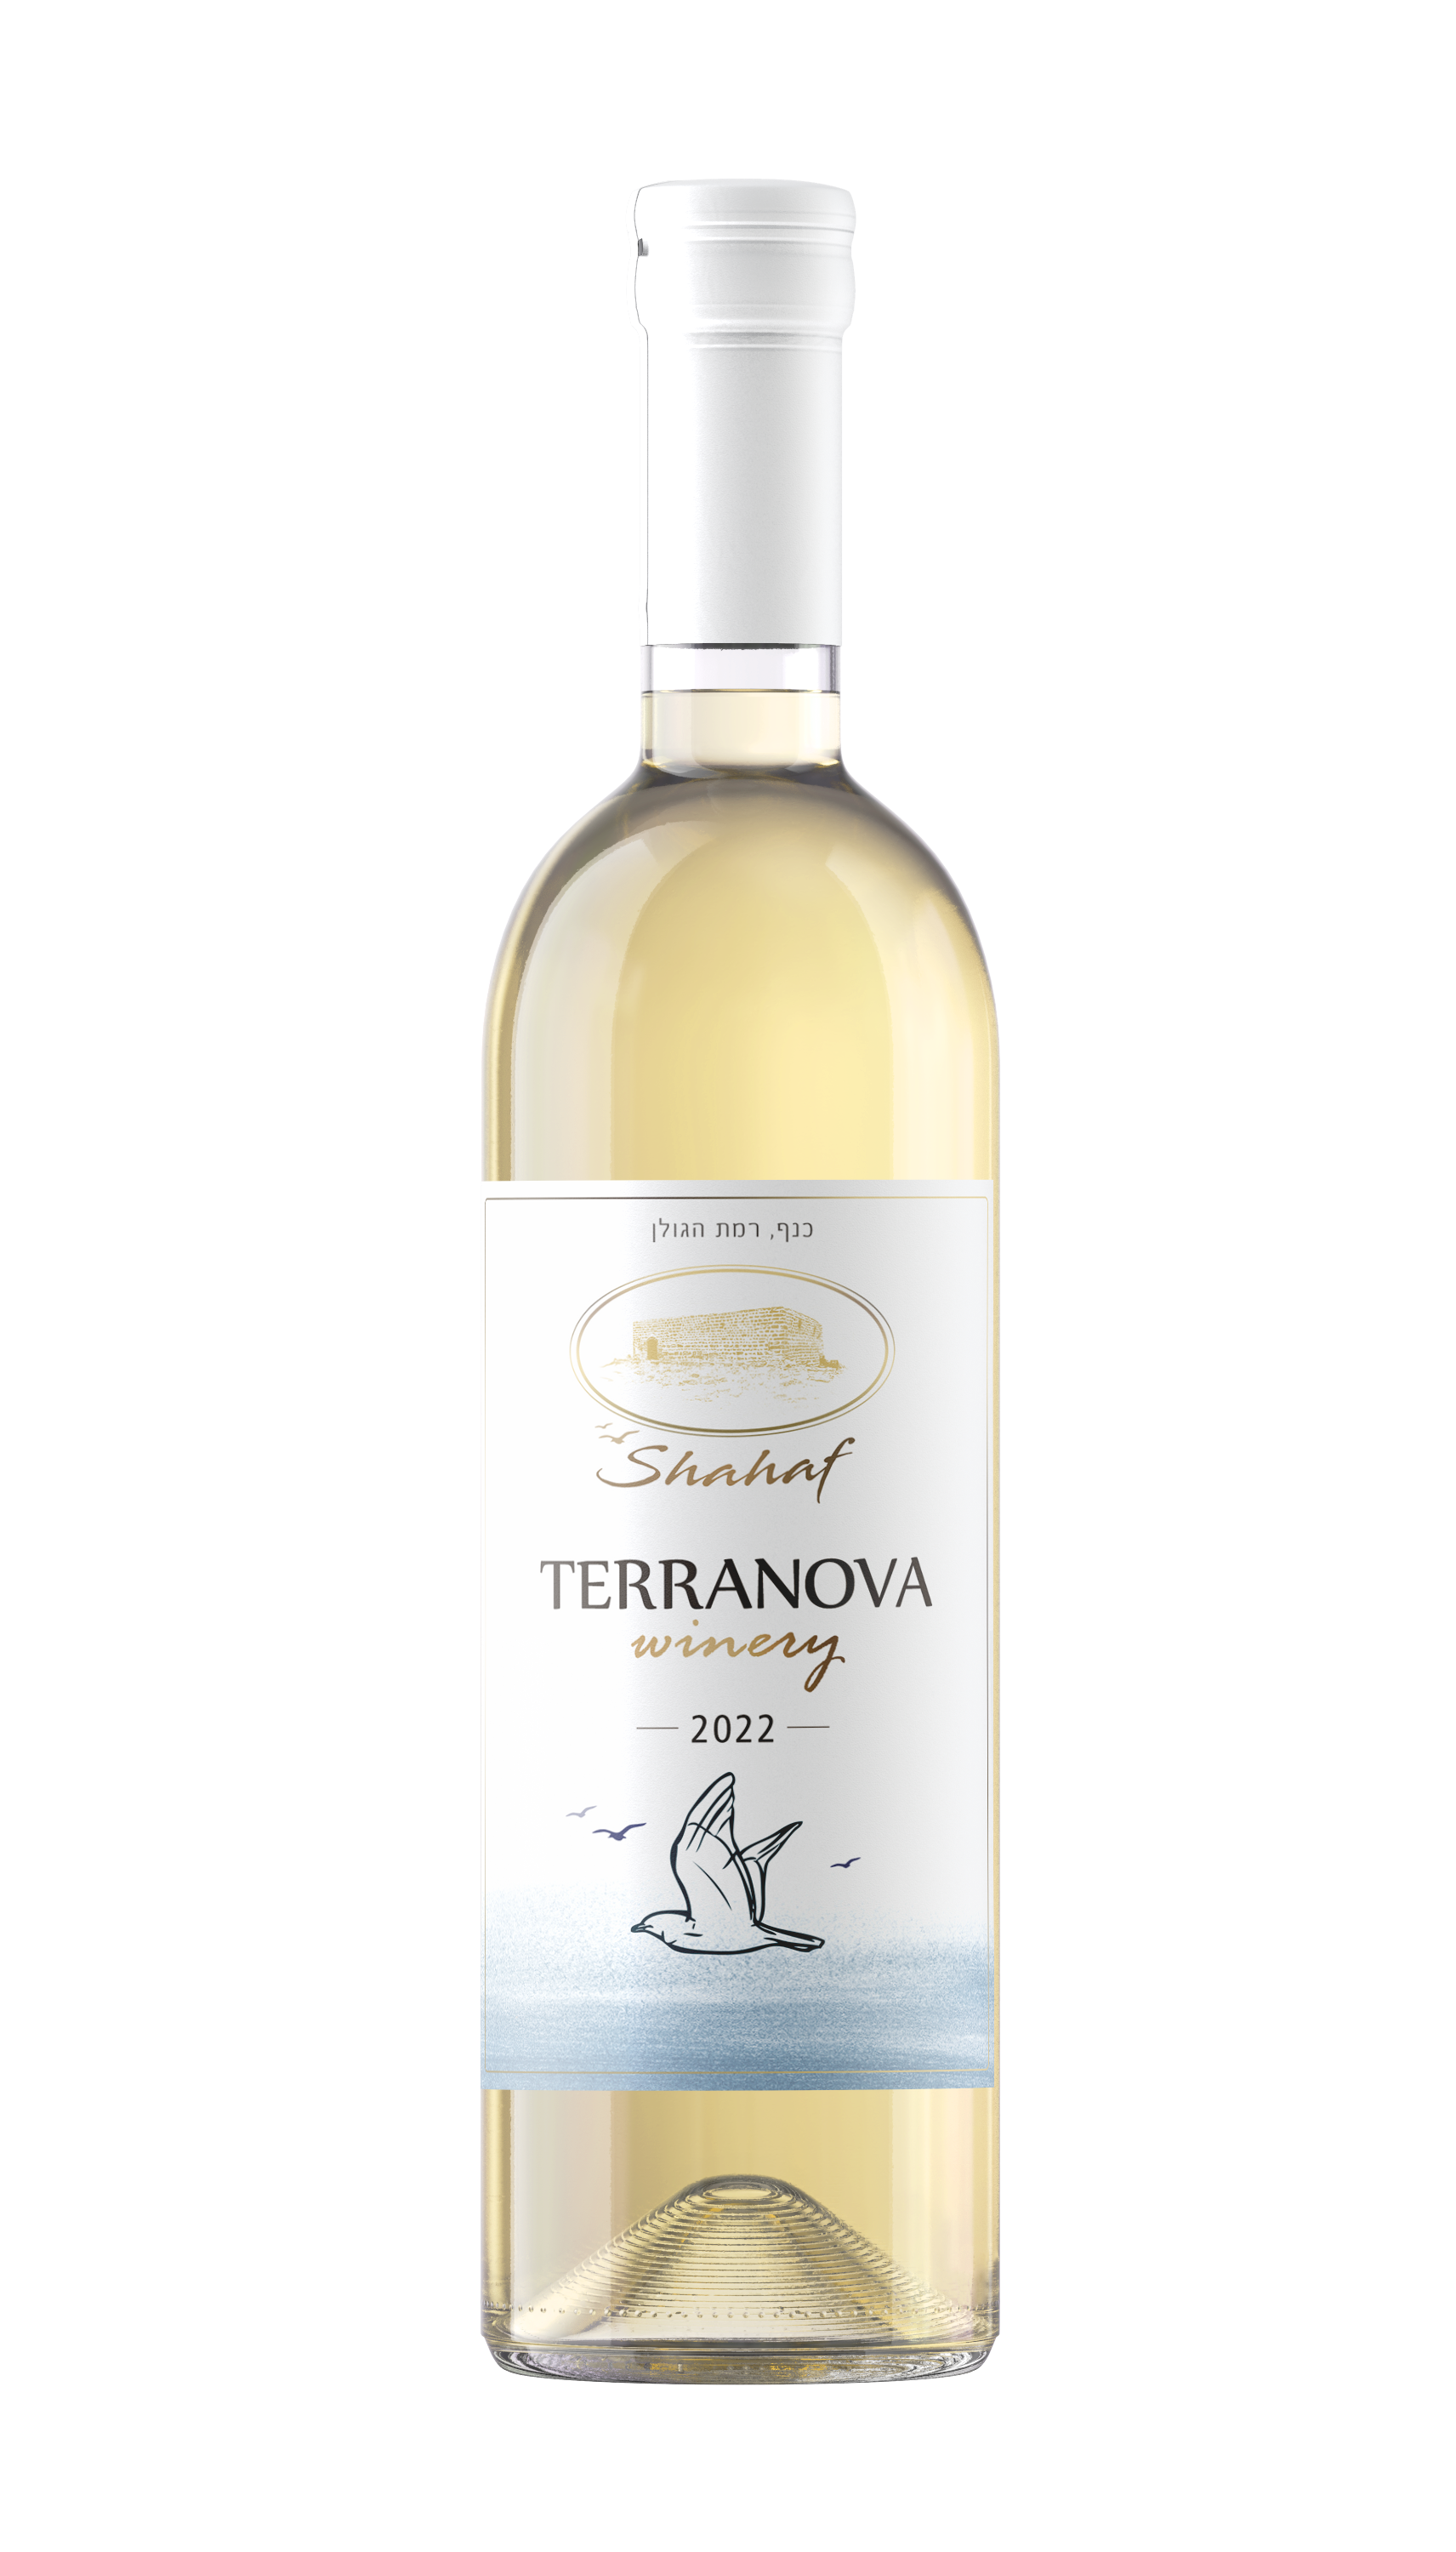 White wine - Shahaf 2022 Terra Nova